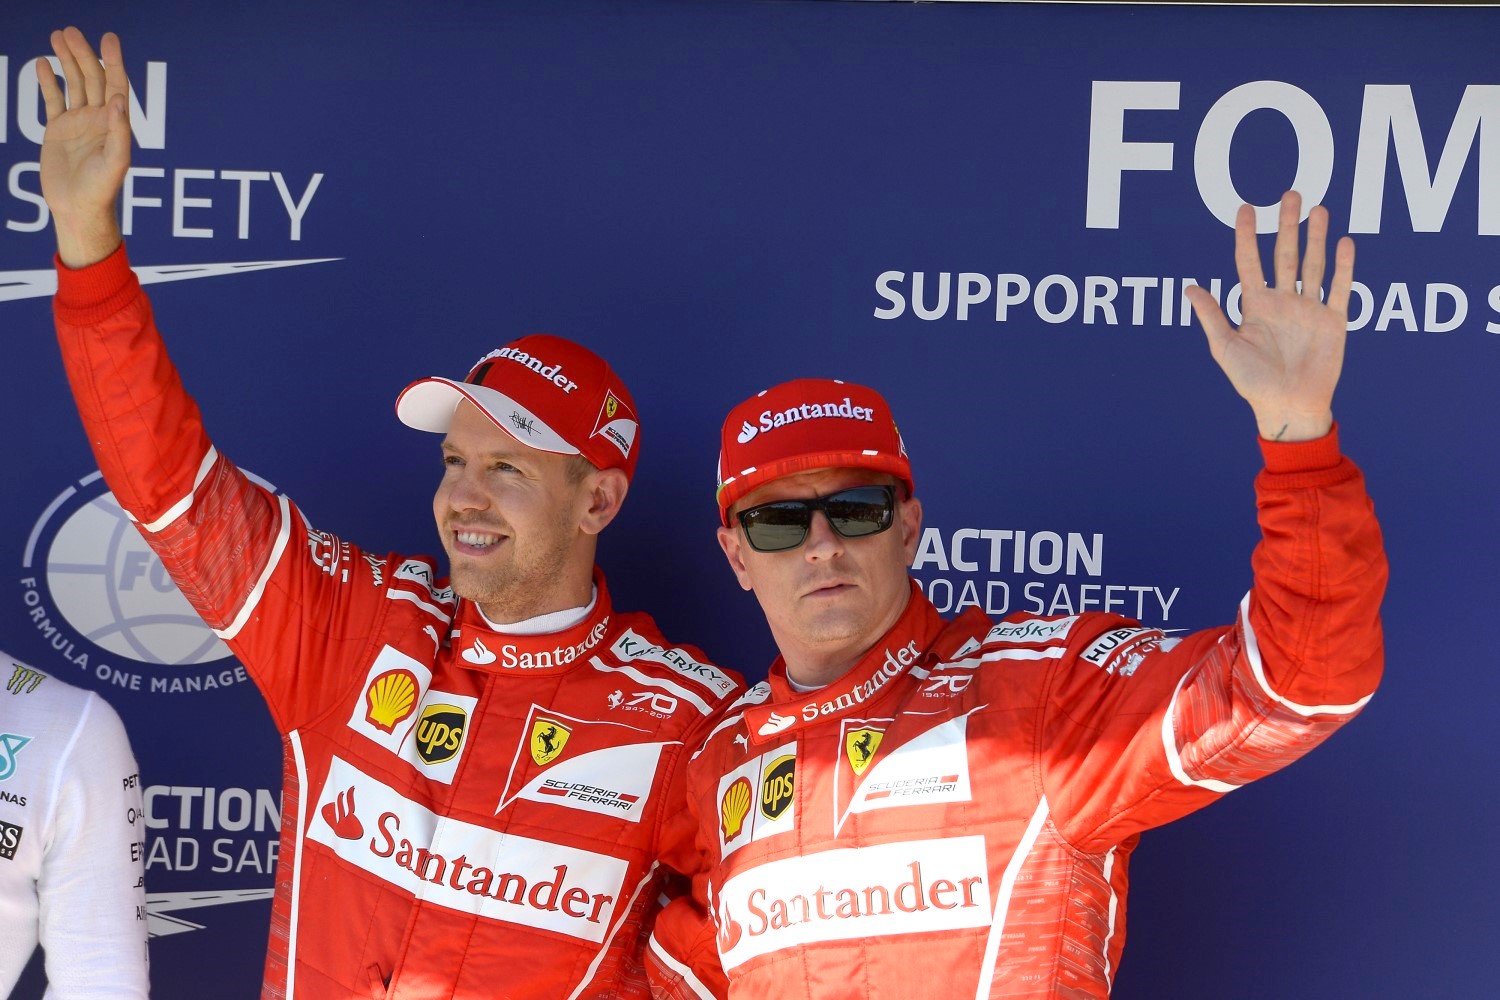 Ferrari team happy with 1-2 result